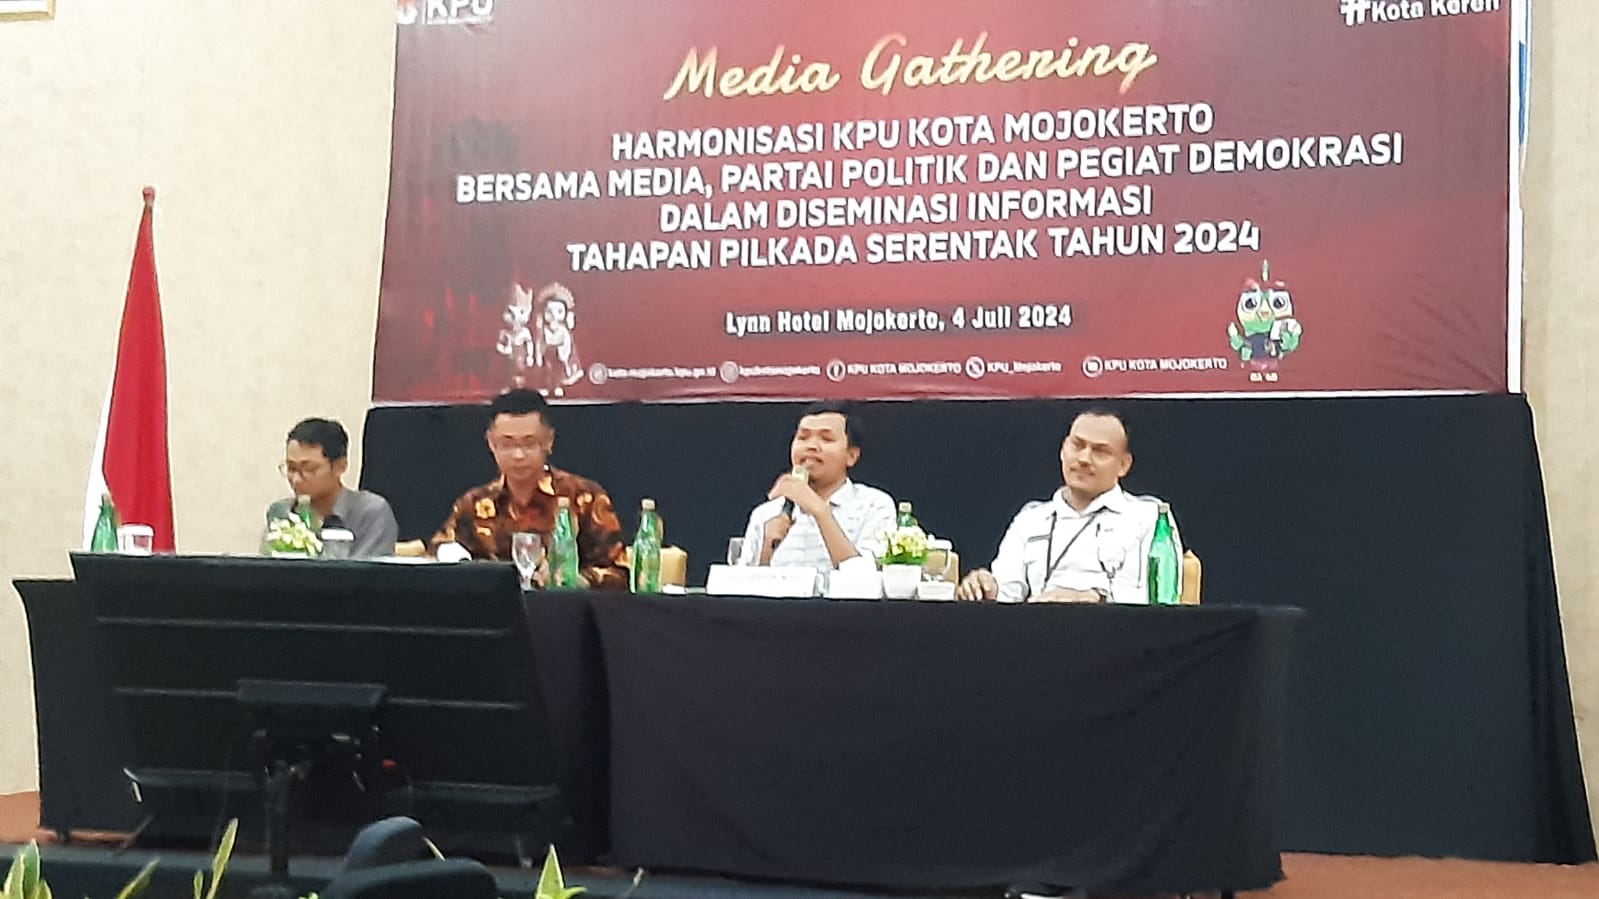 KPU Kota Mojokerto Optimistis Partisipasi Pemilih di Pilkada 2024 Meningkat 